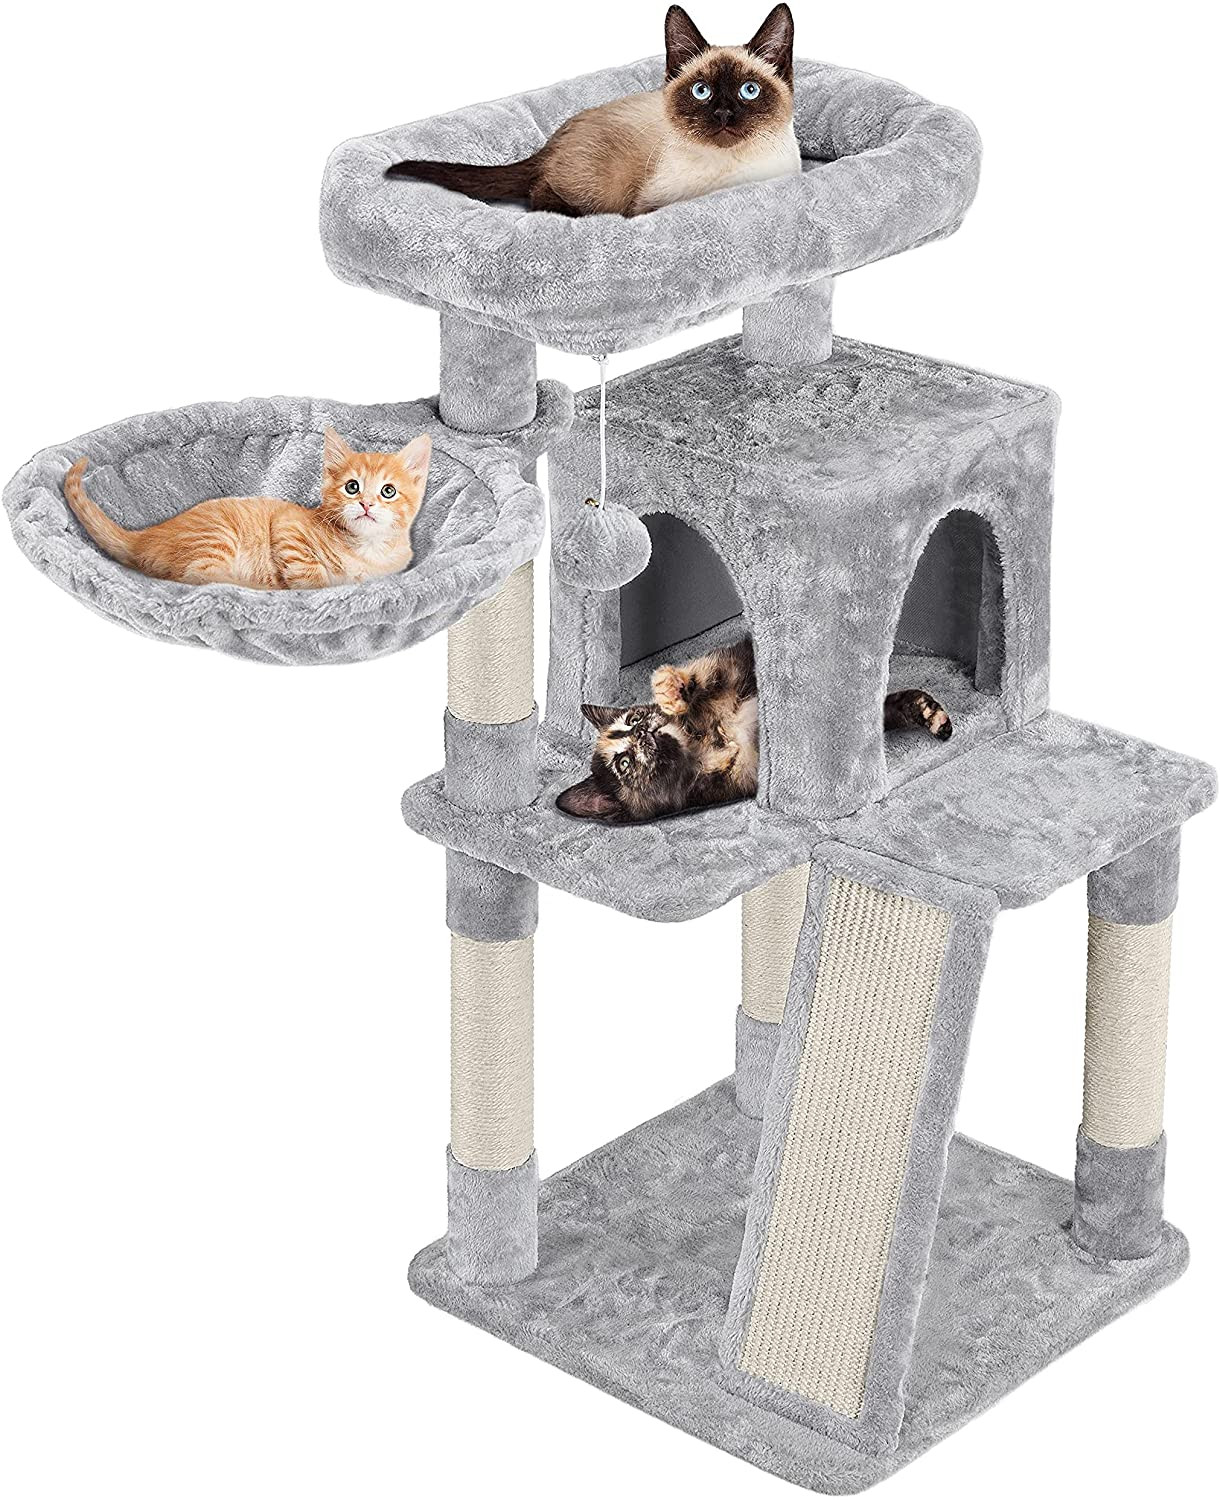 Комплекс для кошек Pet БМФ, серый, 4 уровня